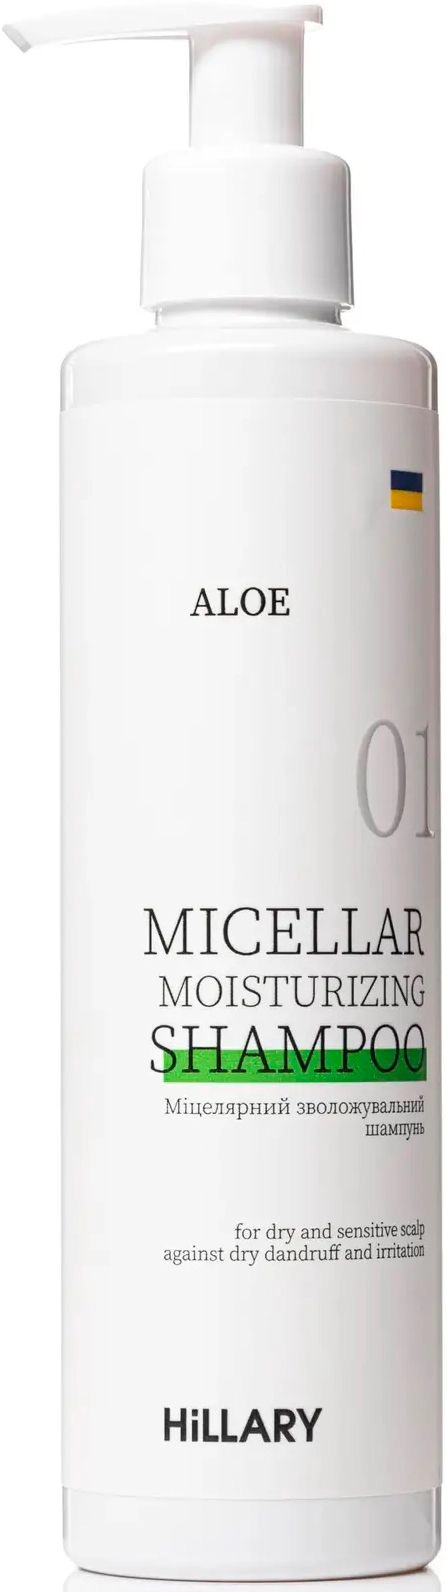 Мицеллярный увлажняющий шампунь - Hillary Aloe Aloe Micellar Moisturizing Shampoo, 250 мл - фото N1